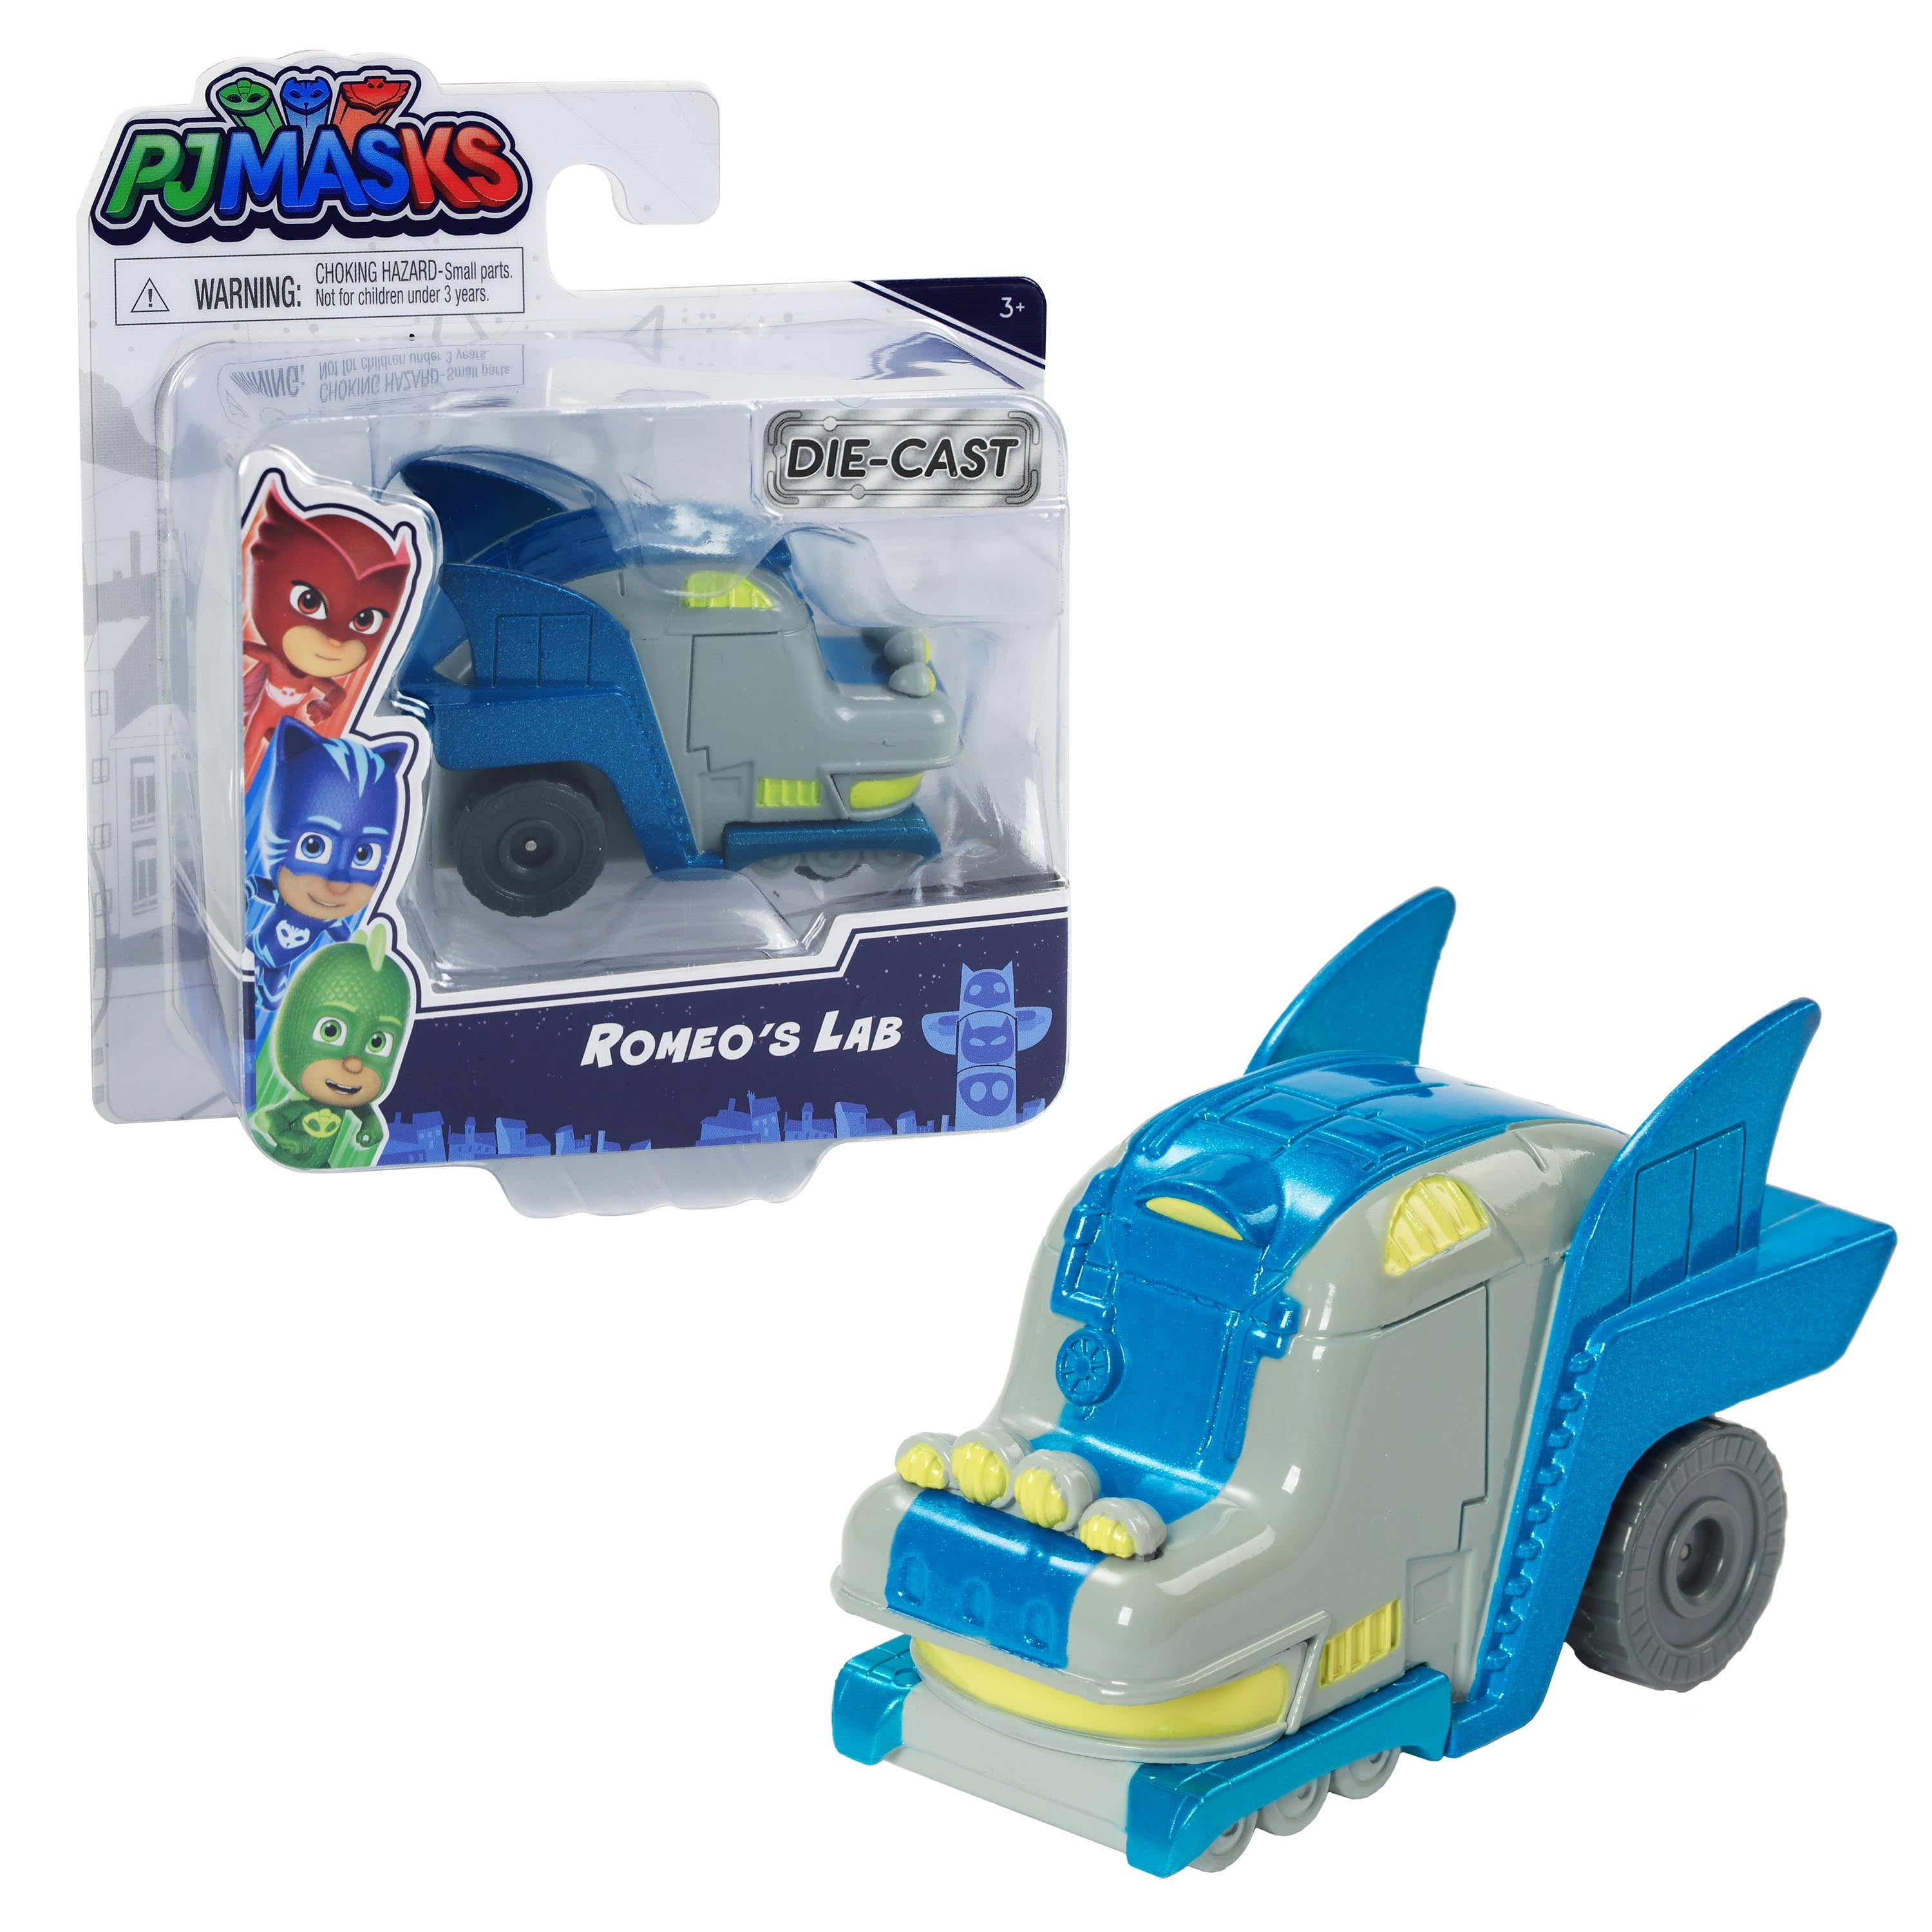 New Toy mini PJMASKS Romeo Just Play car is aqua - Depop